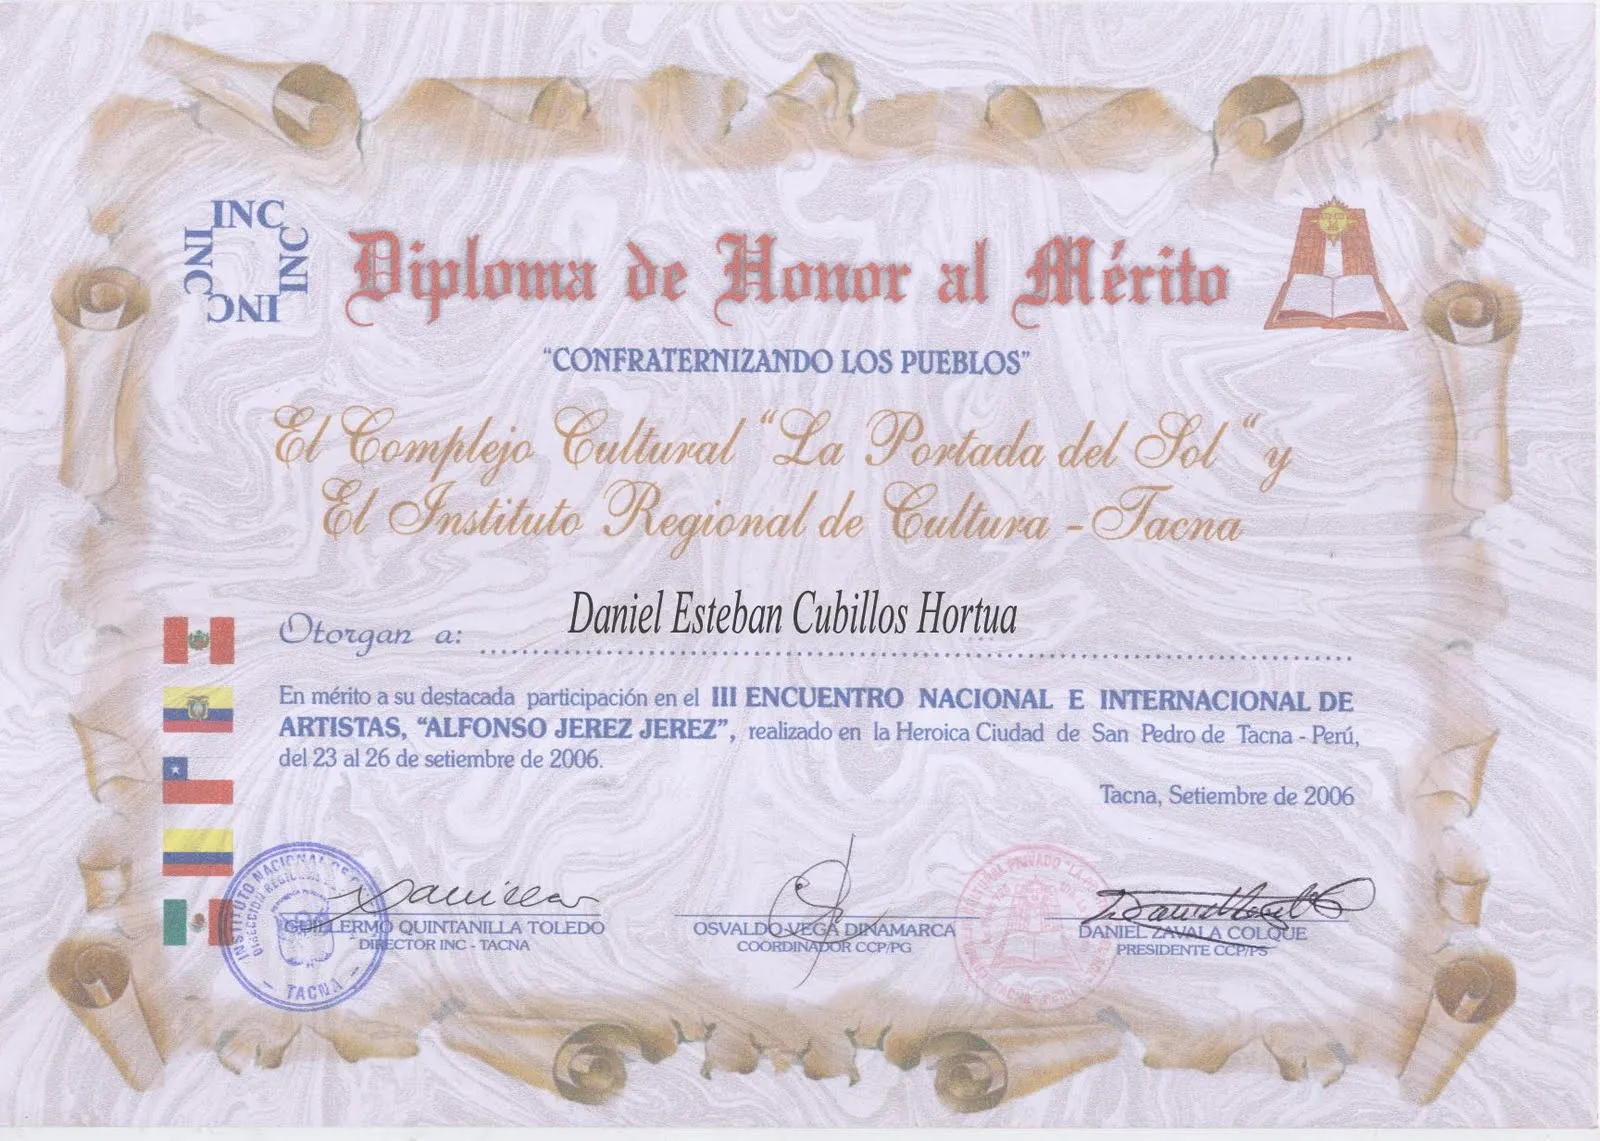 Modelos de diplomas de honor al merito - Imagui